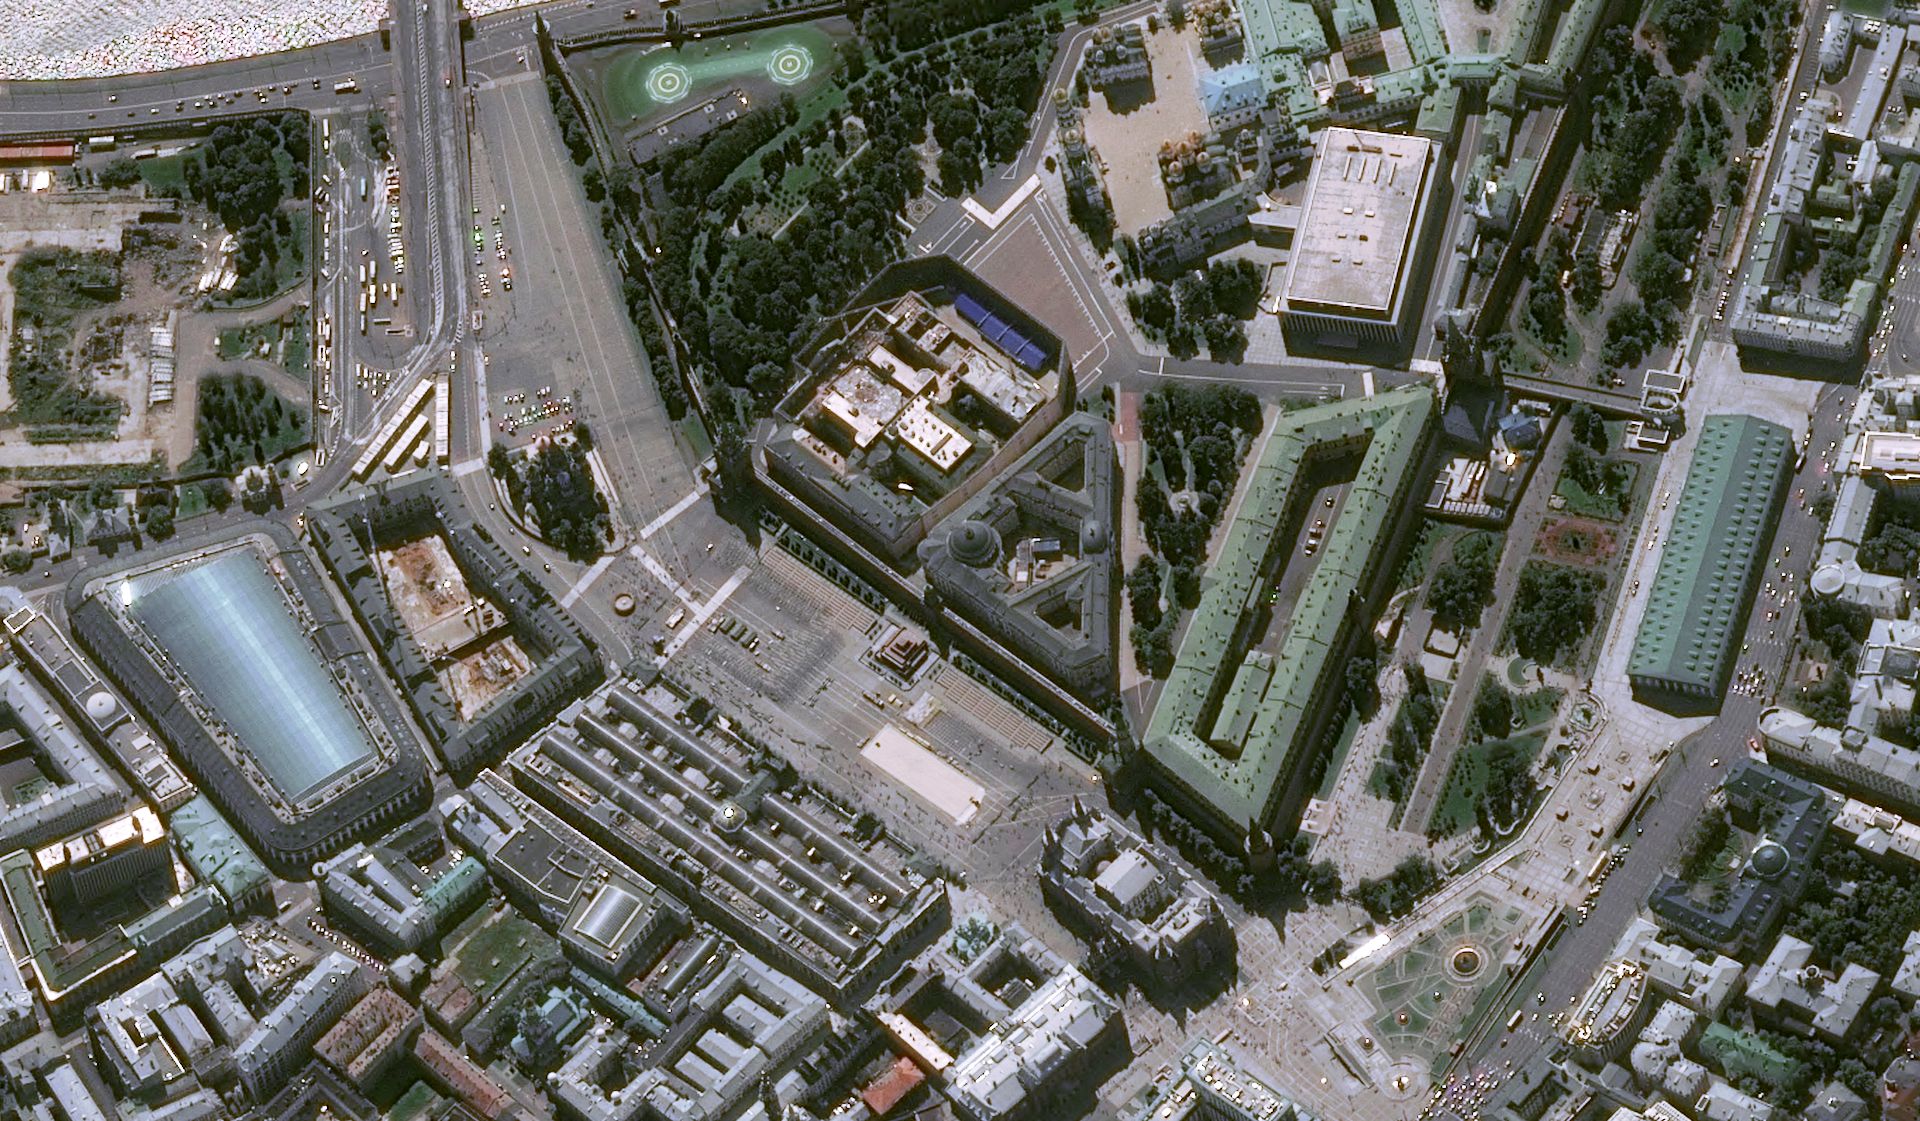 Russie - Moscou - Kremlin - Place rouge - Cathédrale St Basil - GUM - Vladimir Poutine - Pleiades - Pléiades - satellite